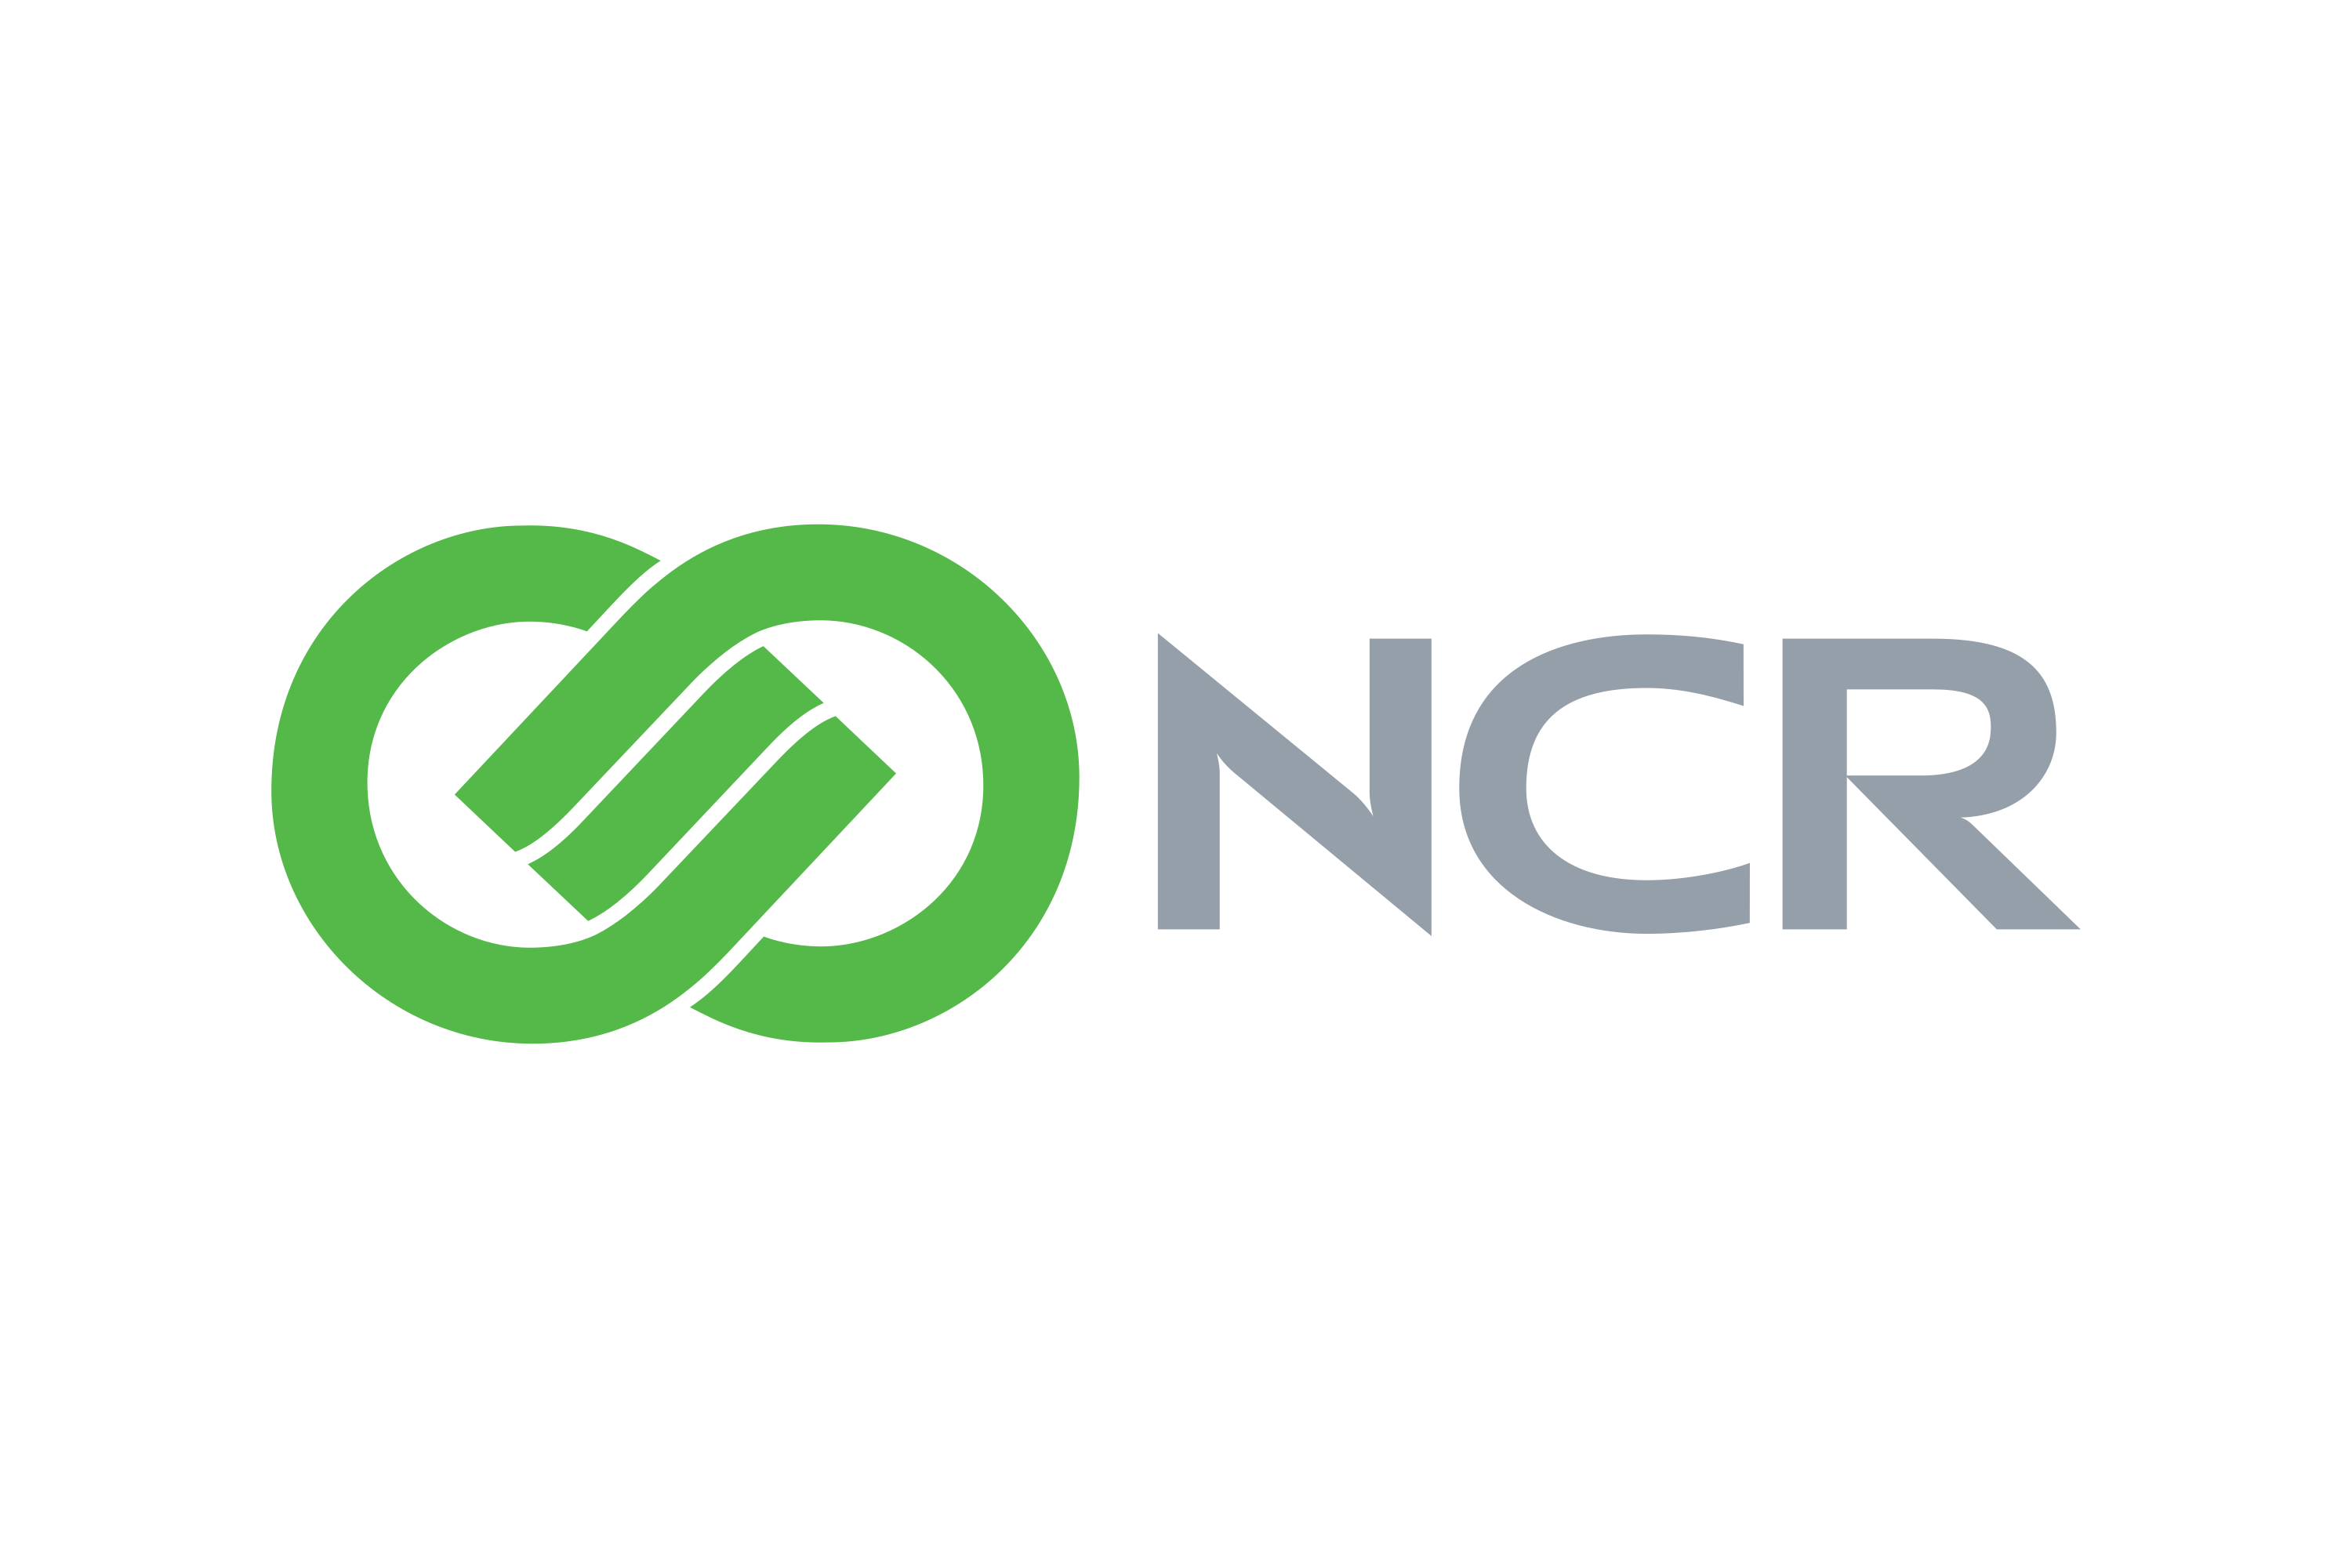 ncr-logo